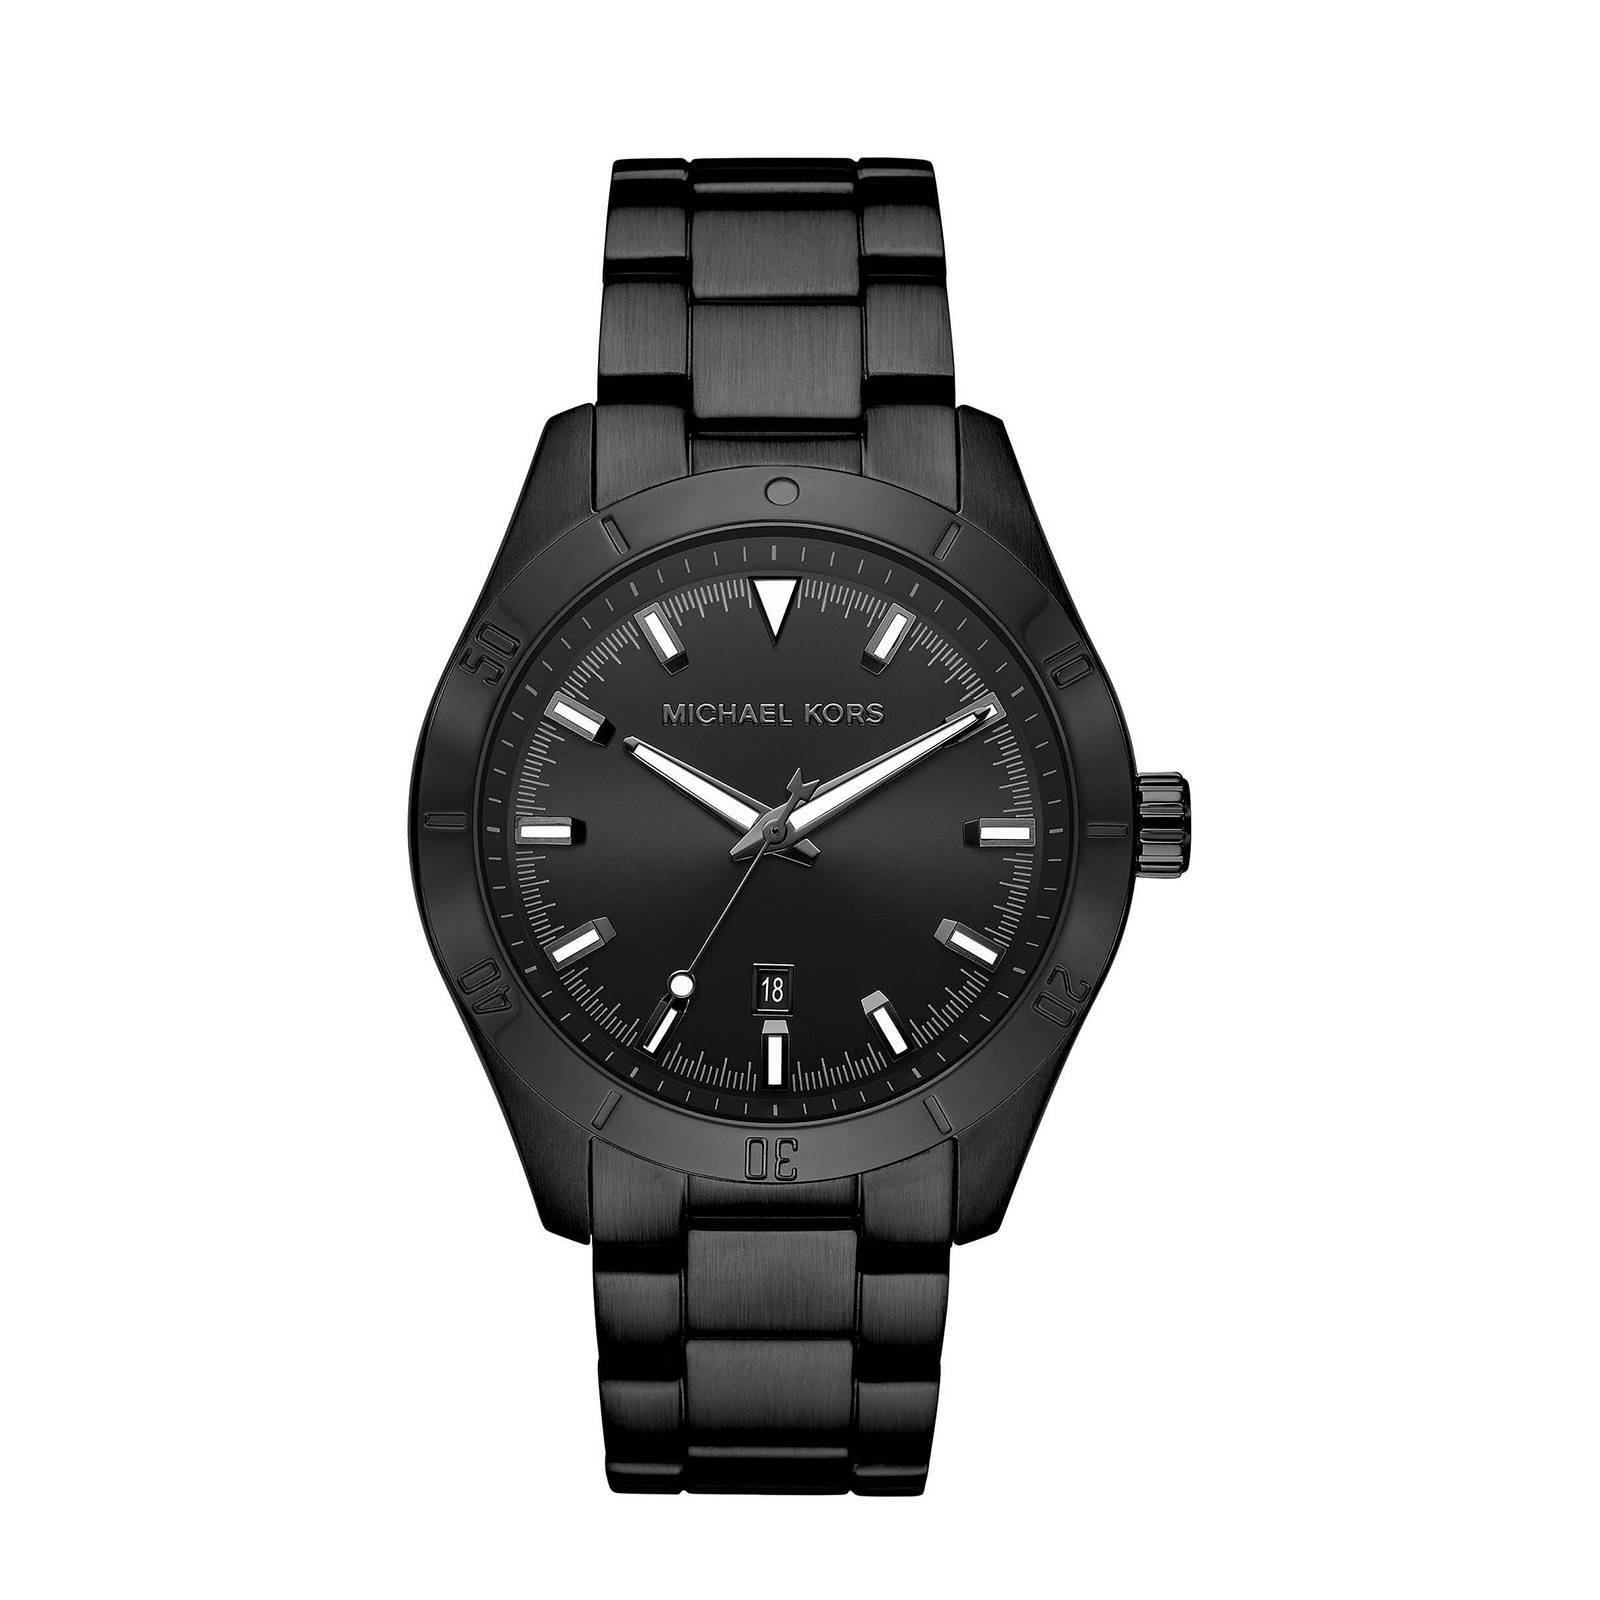 Michael Kors horloge MK8817 Layton zwart online kopen